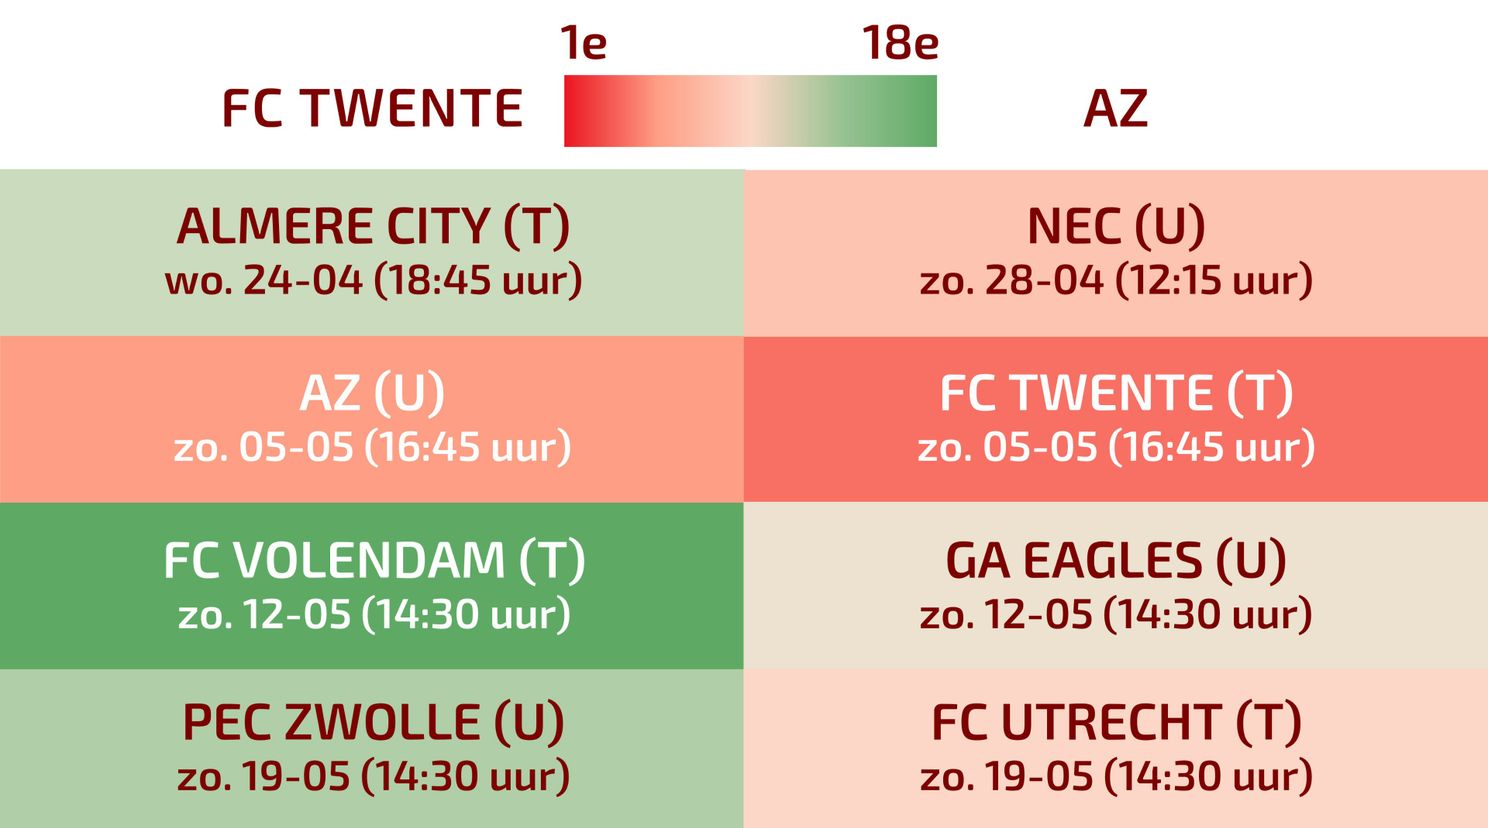 Overzicht: Alle resterende wedstrijden van FC Twente en AZ op een rij